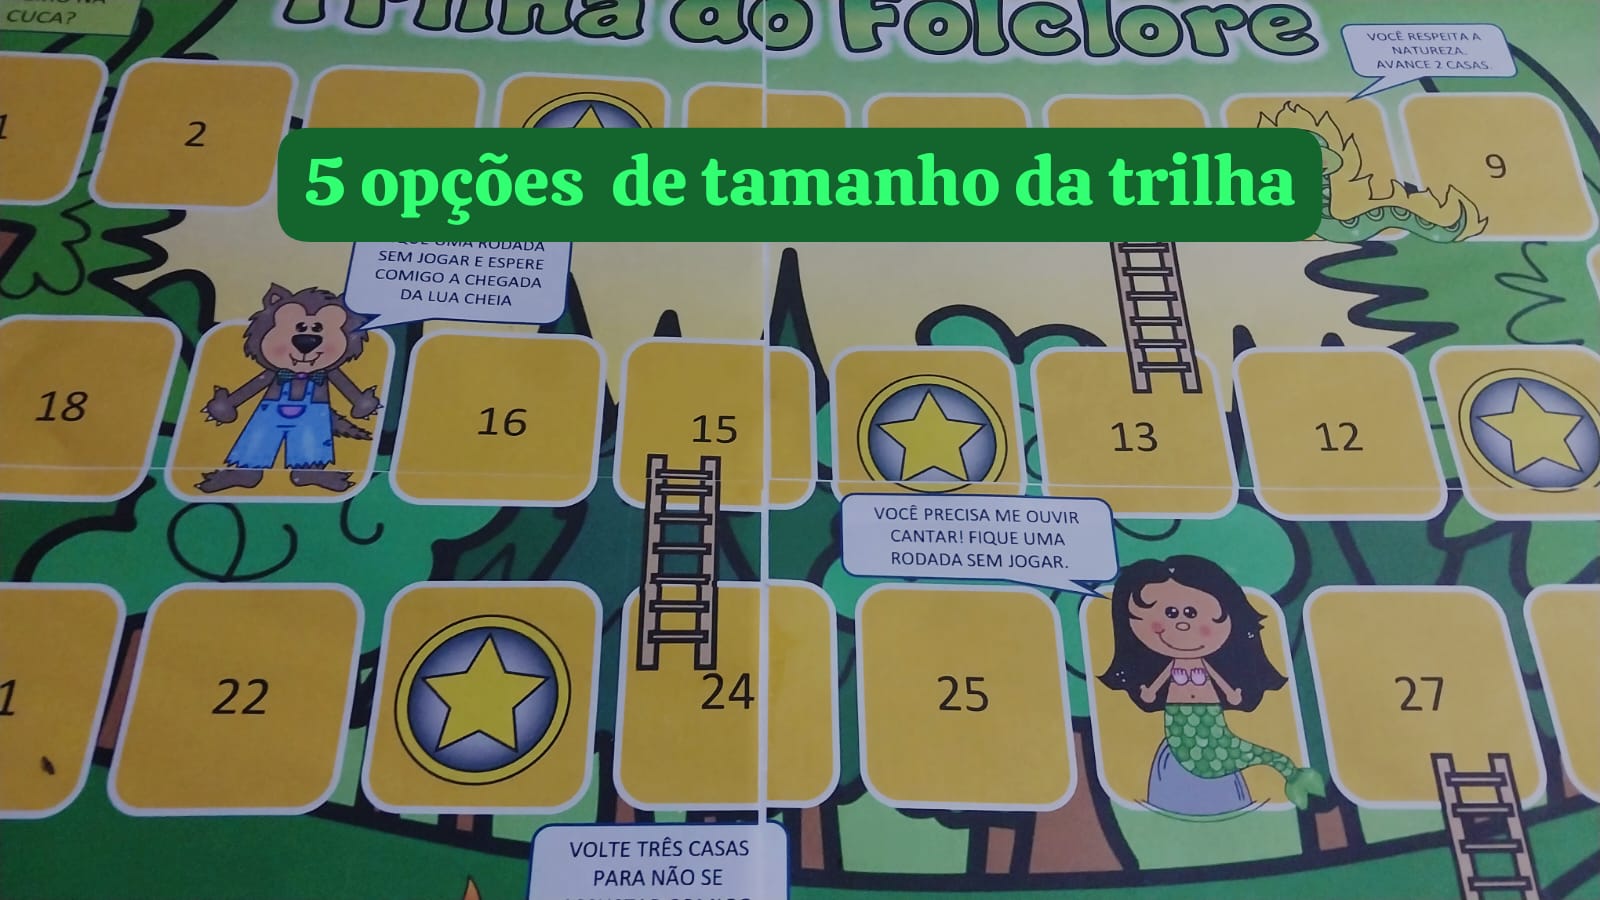 Trilha do folclore imprimir grátis - Educa Criança